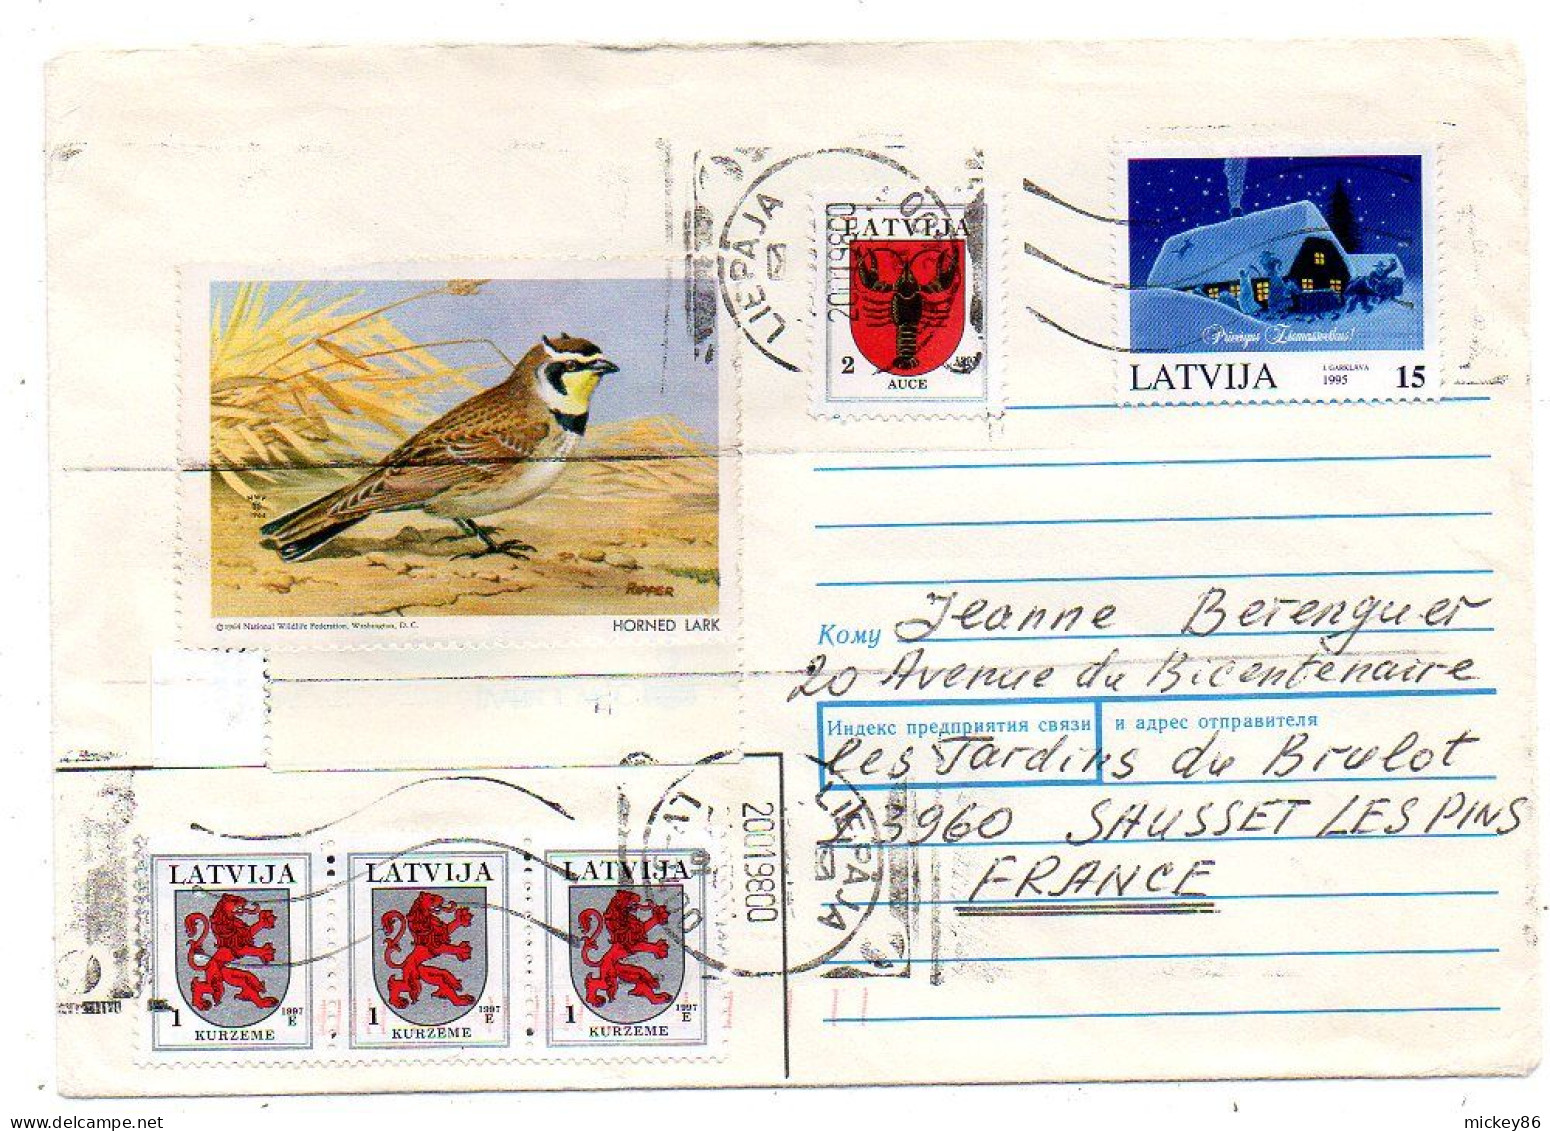 Lettonie -1998-- LIEPAJA  Pour SAUSSET LES BAINS-13 (France)..timbres (blason,voeux,oiseau)......cachet - Latvia